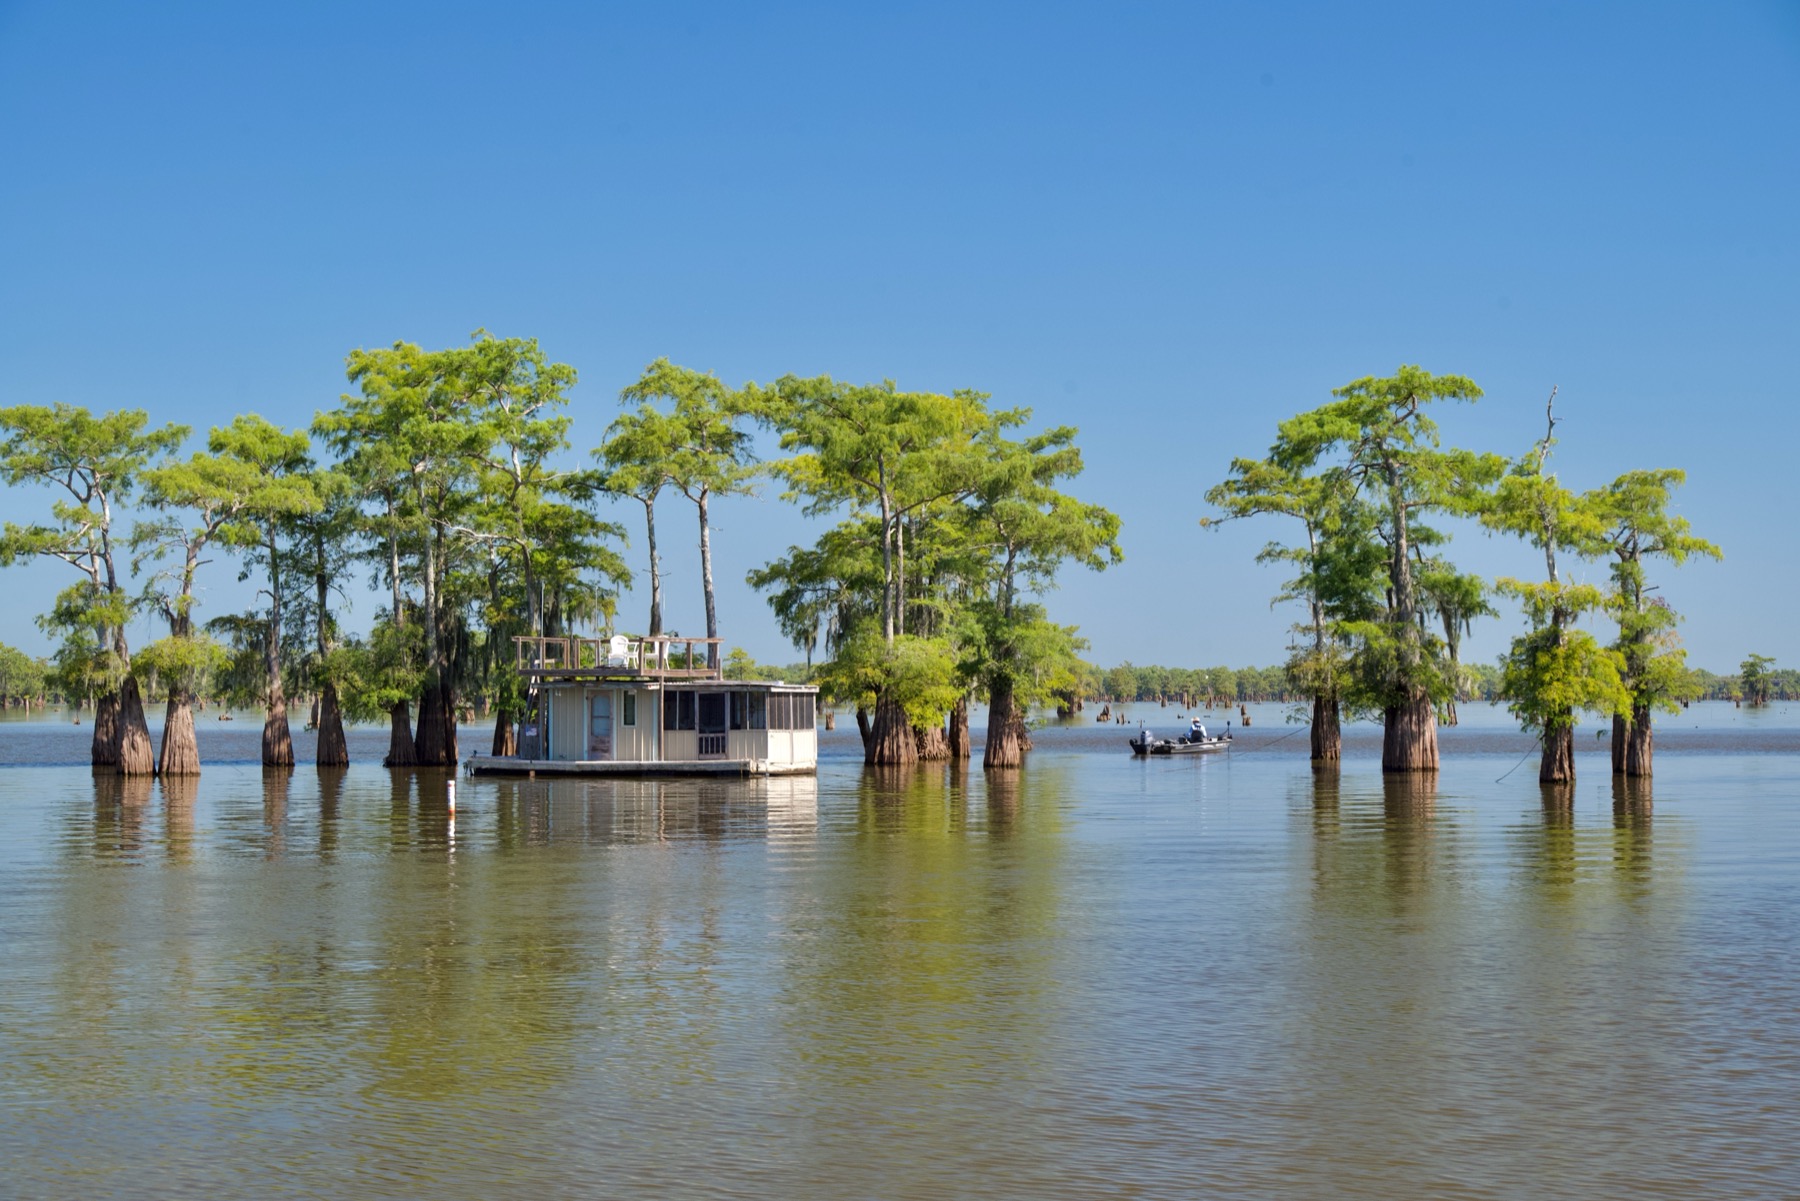 Bassin Atchafalaya de Louisiane : les bayous américains dans toute leur splendeur